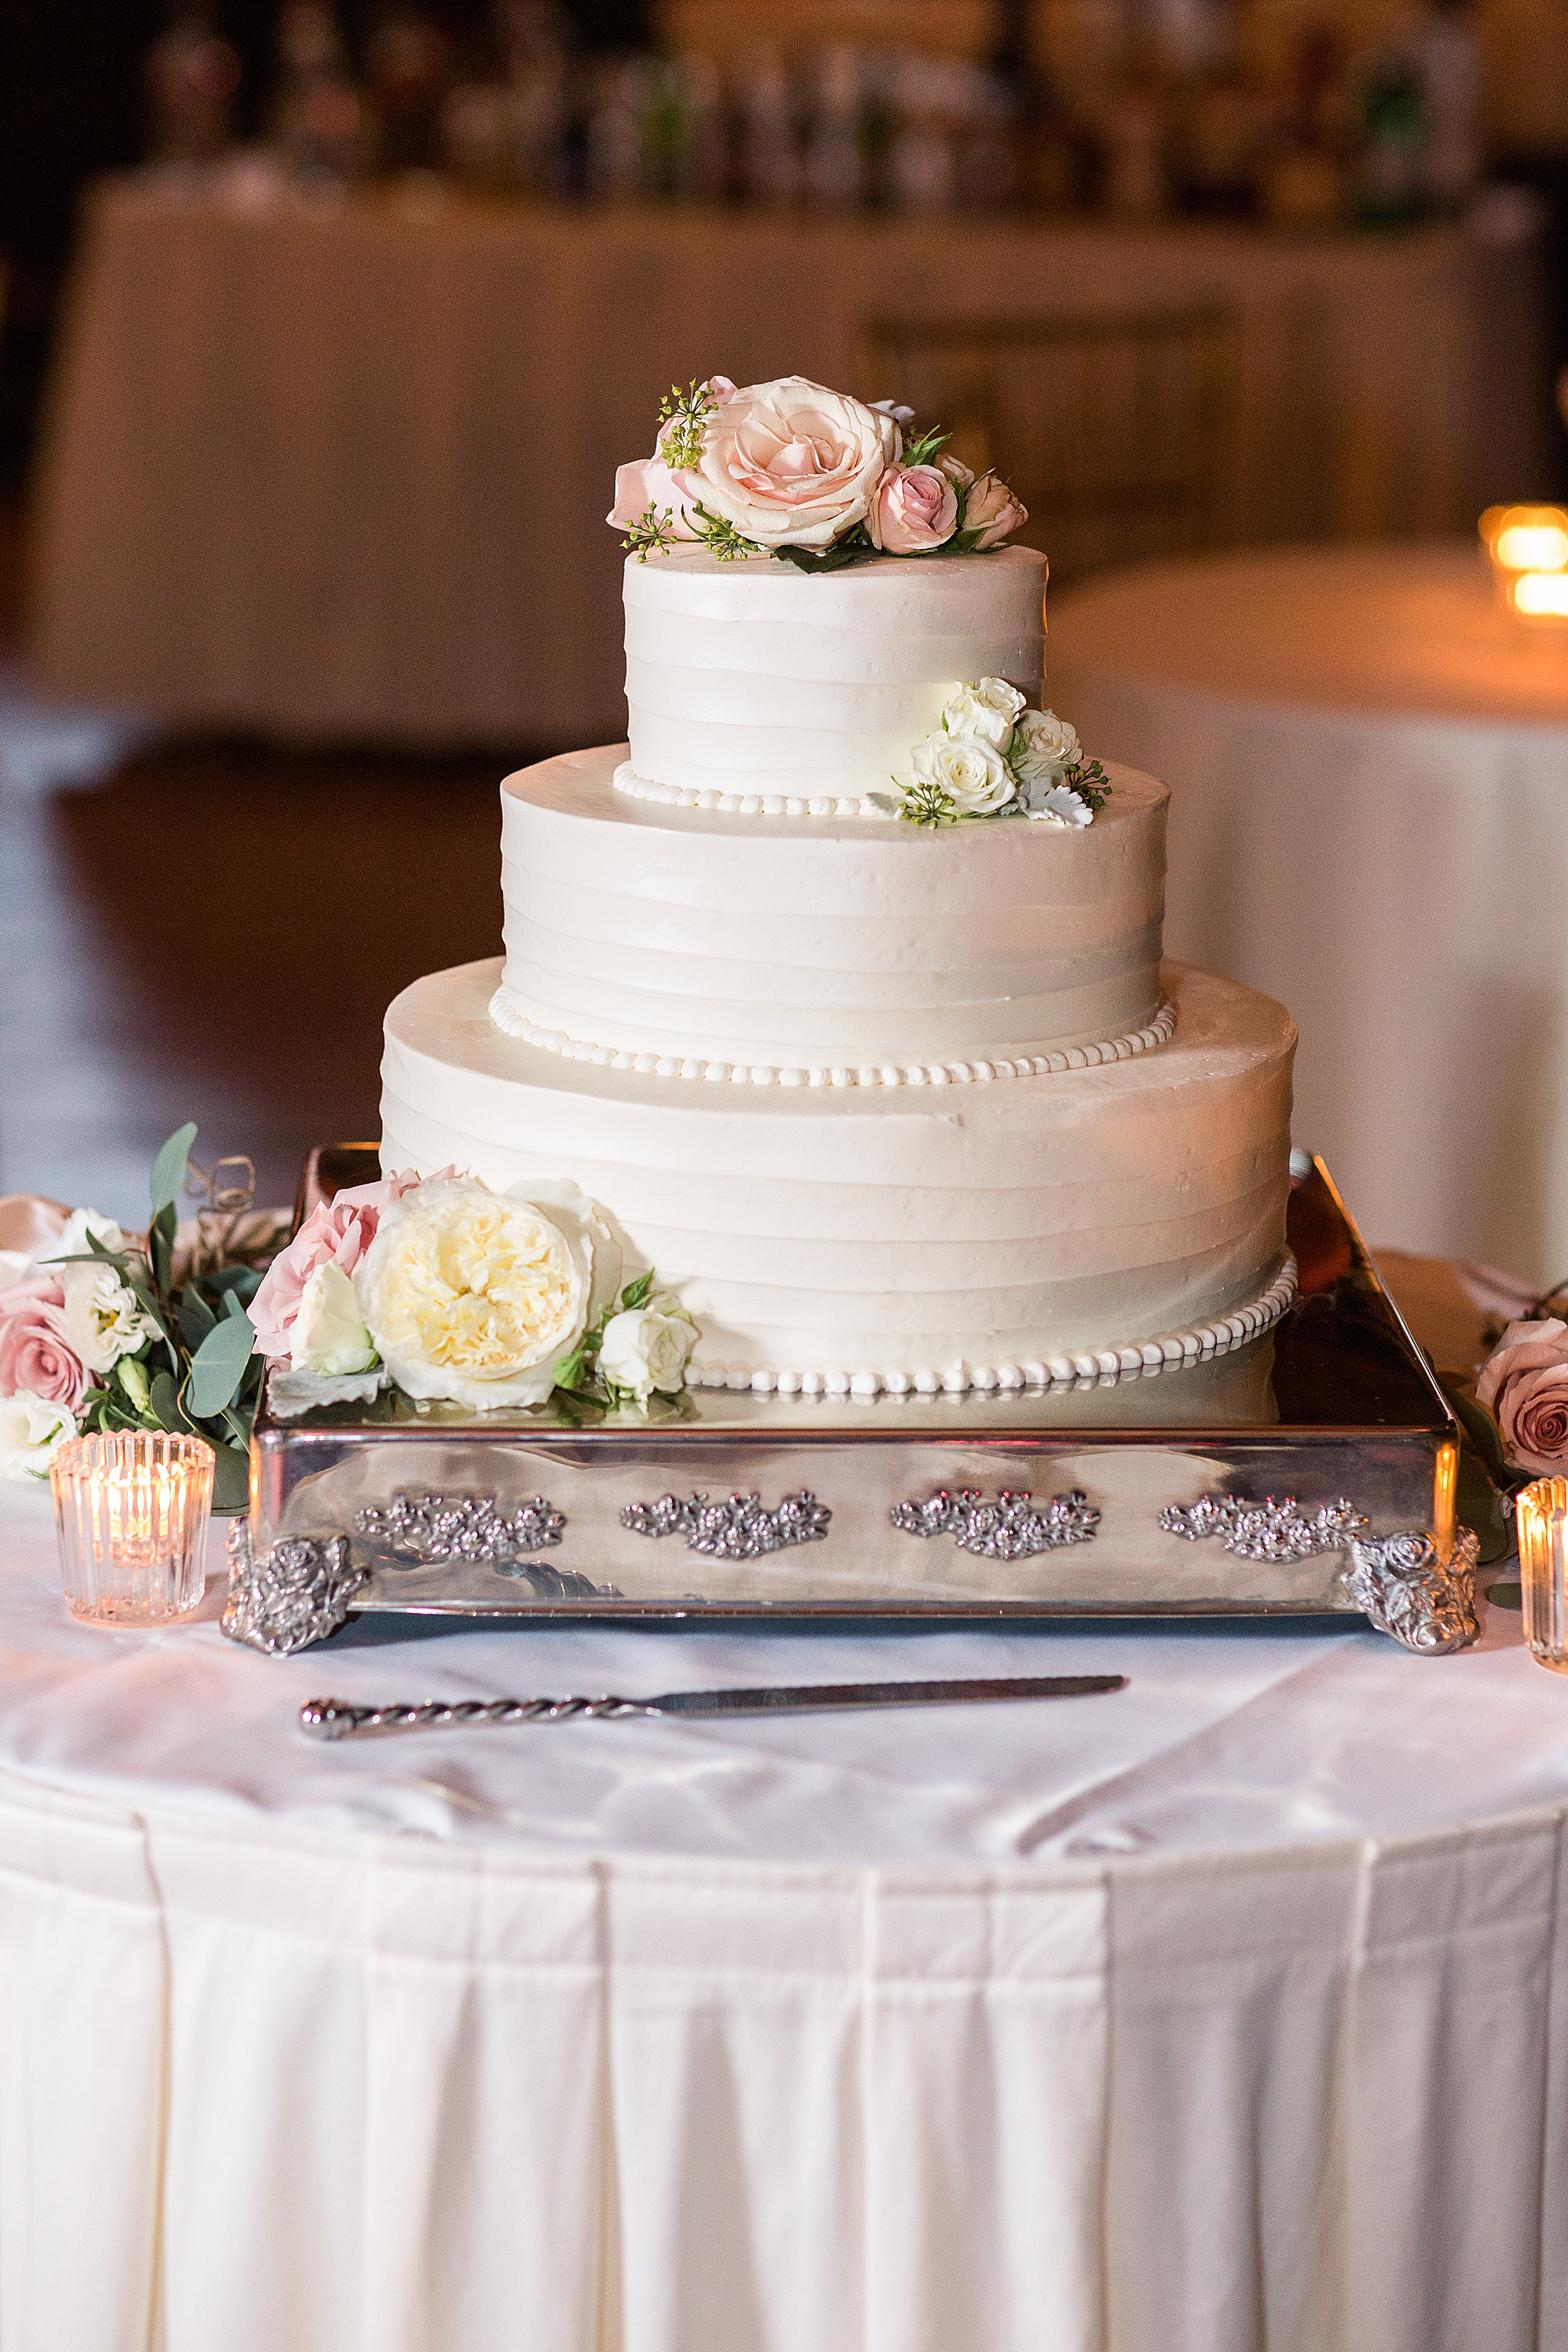 Maryland Club wedding cake photographed by Alexandra Mandato Photography